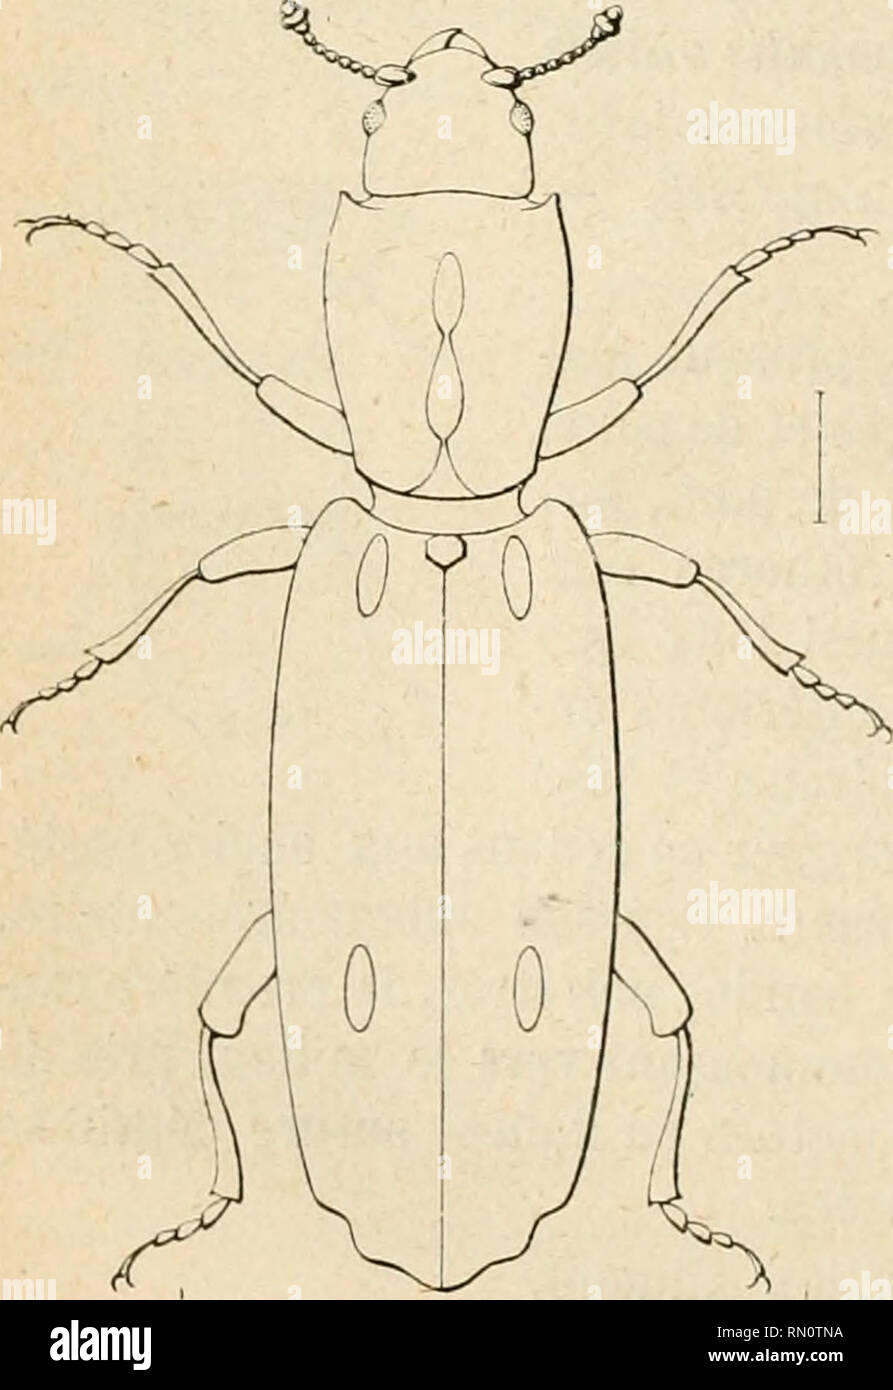 . Annales de la Société entomologique de France. Insects; Entomology. A. Grouvellb. &quot;22. Teredolaemus crassus n. s[». Elongatus, subcylindricus, nitidus,pairebreviterqûepilosus, niger;ely trisochraceo-ferrugineis, trans- n'rsim nigro bimaculatis,antennis pedibusque testaœis;prothorace sub- quadrato, angulis anticis rotundatis, postiris obtusis; elytris substriato- punctatis, stria suturali ad apicem fortiterimpressa. —Long. 4 mill. Allongé, subcylindrique, brillant, presque glabre, seulement quelques longs poils et de petits poils dressés très épars. Tète noire, bouche et occiput rougeàtr Stock Photo